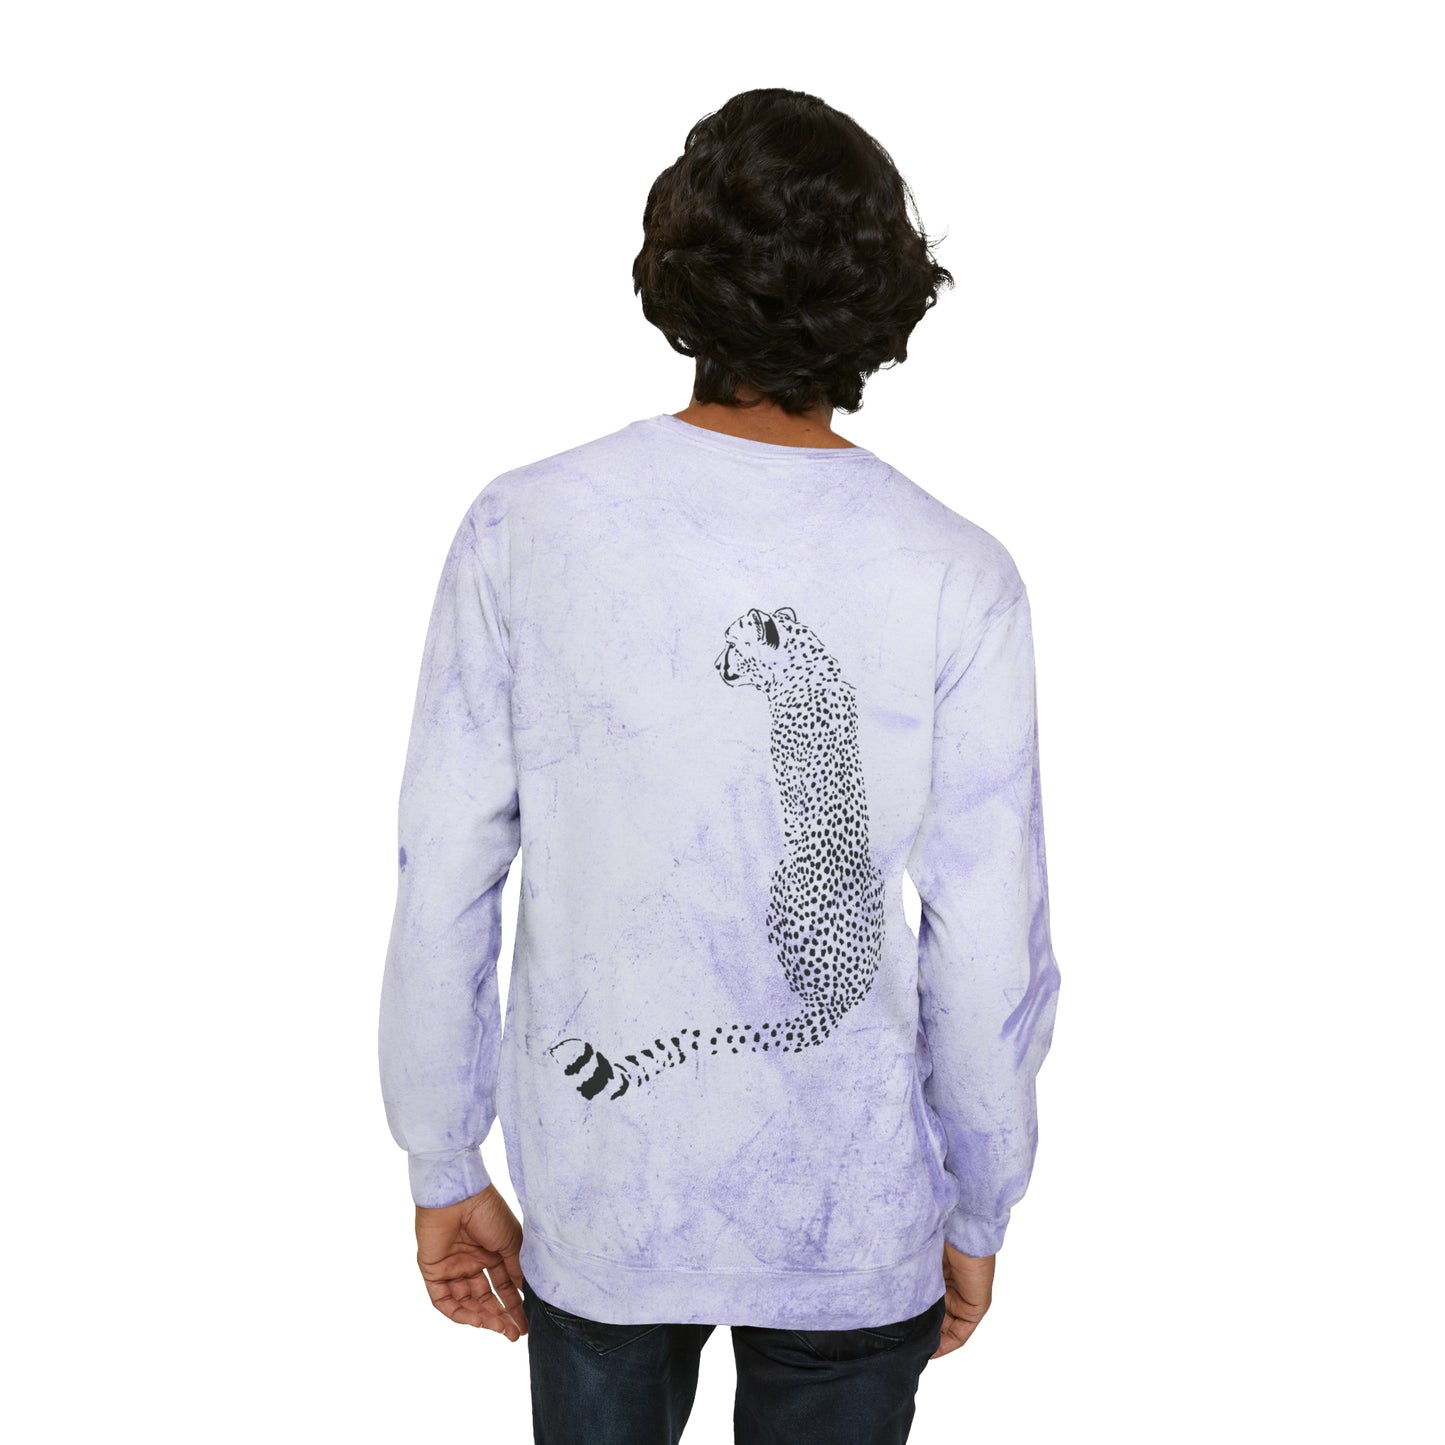 Cheetah Front and Back Crewneck Sweatshirt